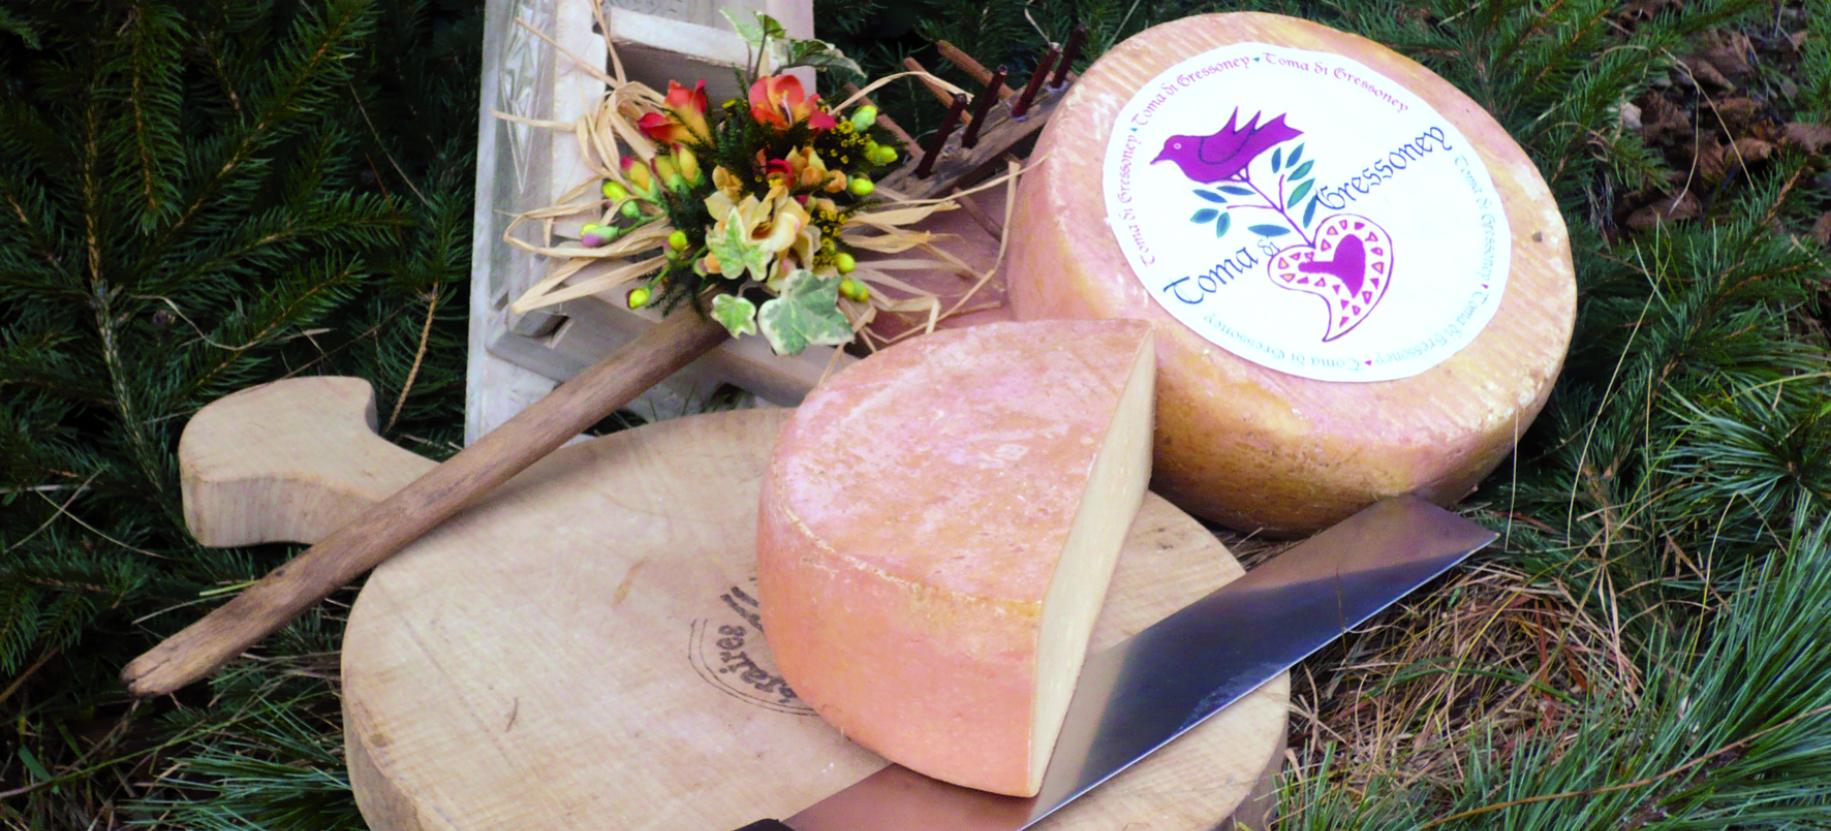 "Toma di Gressoney" cheese festival